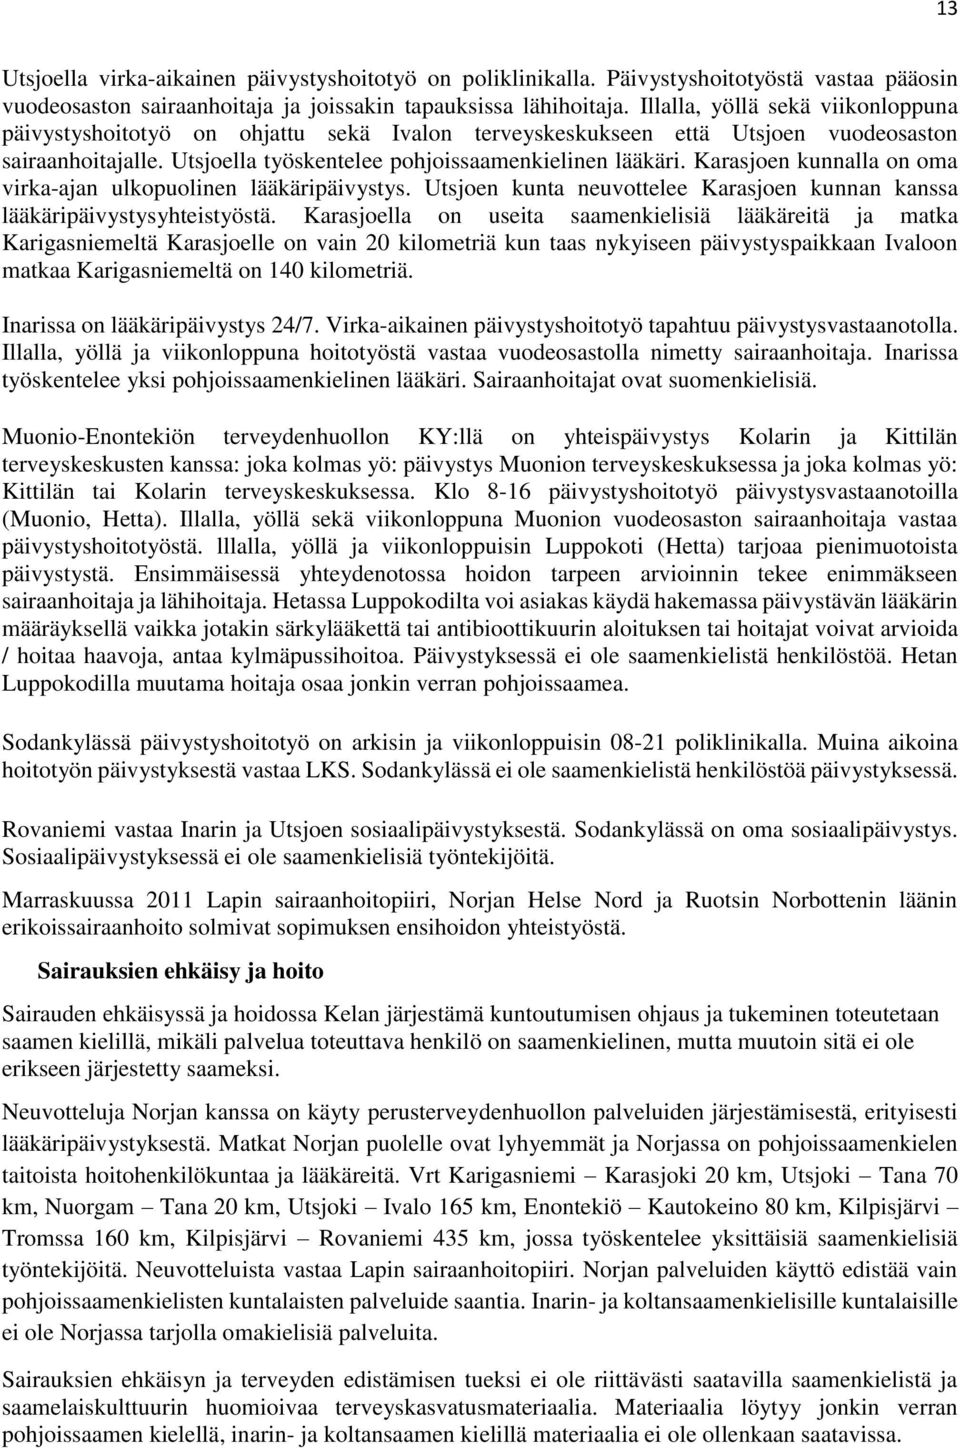 Karasjoen kunnalla on oma virka-ajan ulkopuolinen lääkäripäivystys. Utsjoen kunta neuvottelee Karasjoen kunnan kanssa lääkäripäivystysyhteistyöstä.